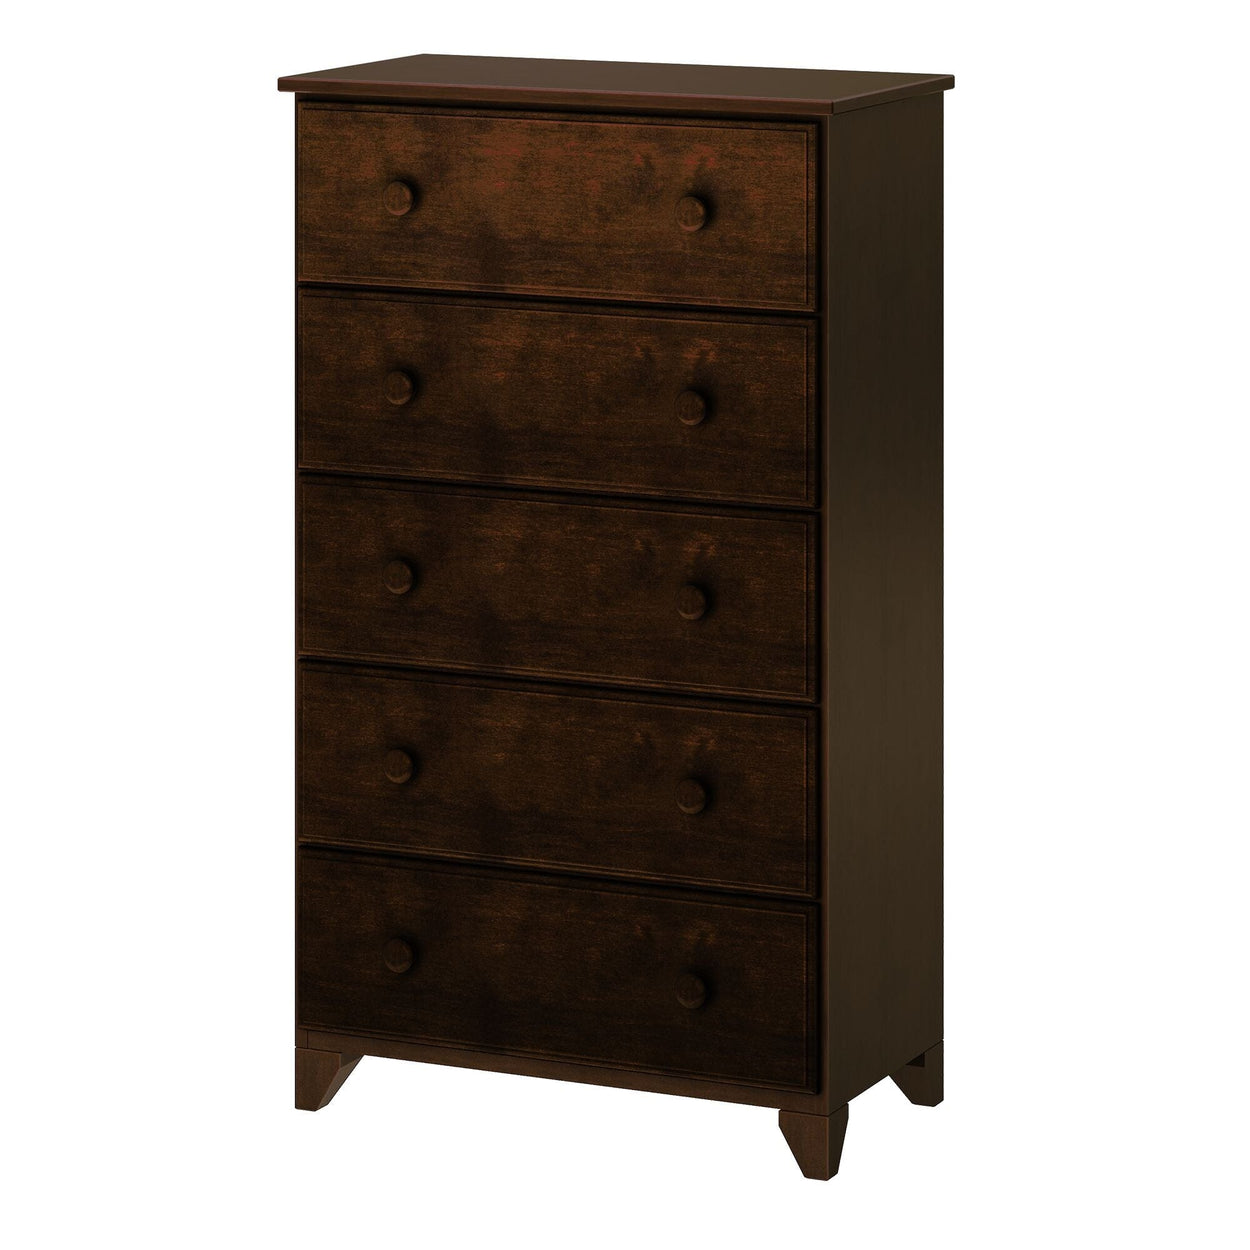 180015-005 : Furniture 5-Drawer Dresser, Espresso